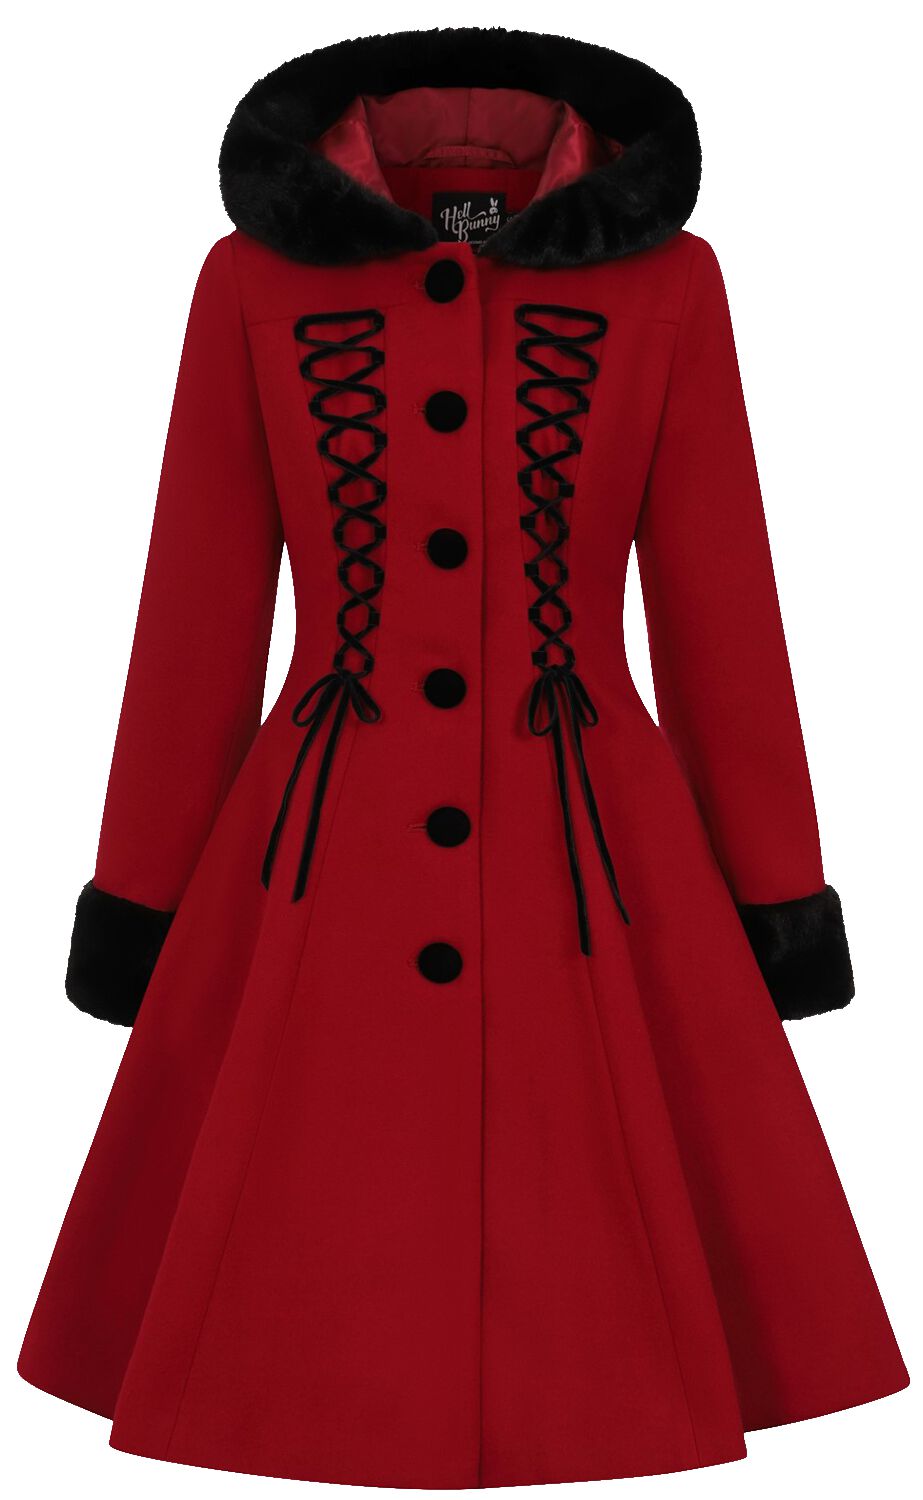 Manteaux Gothic de Hell Bunny - Manteau Amaya - XS à 4XL - pour Femme - rouge/noir